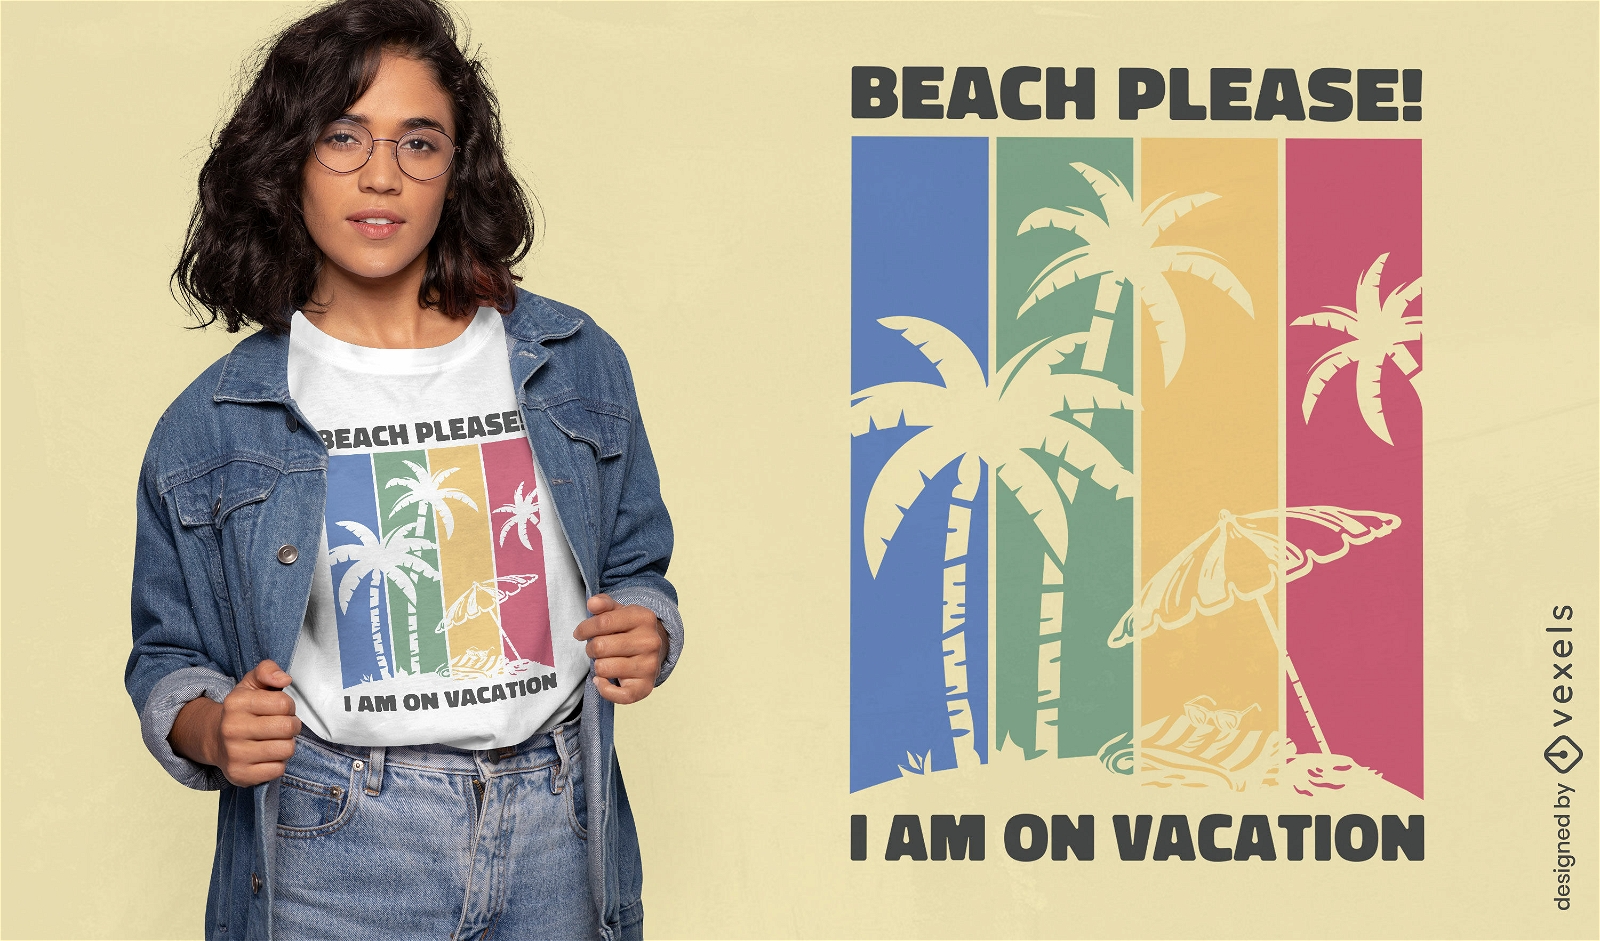 Dise?o de camiseta de vacaciones de verano en la playa.